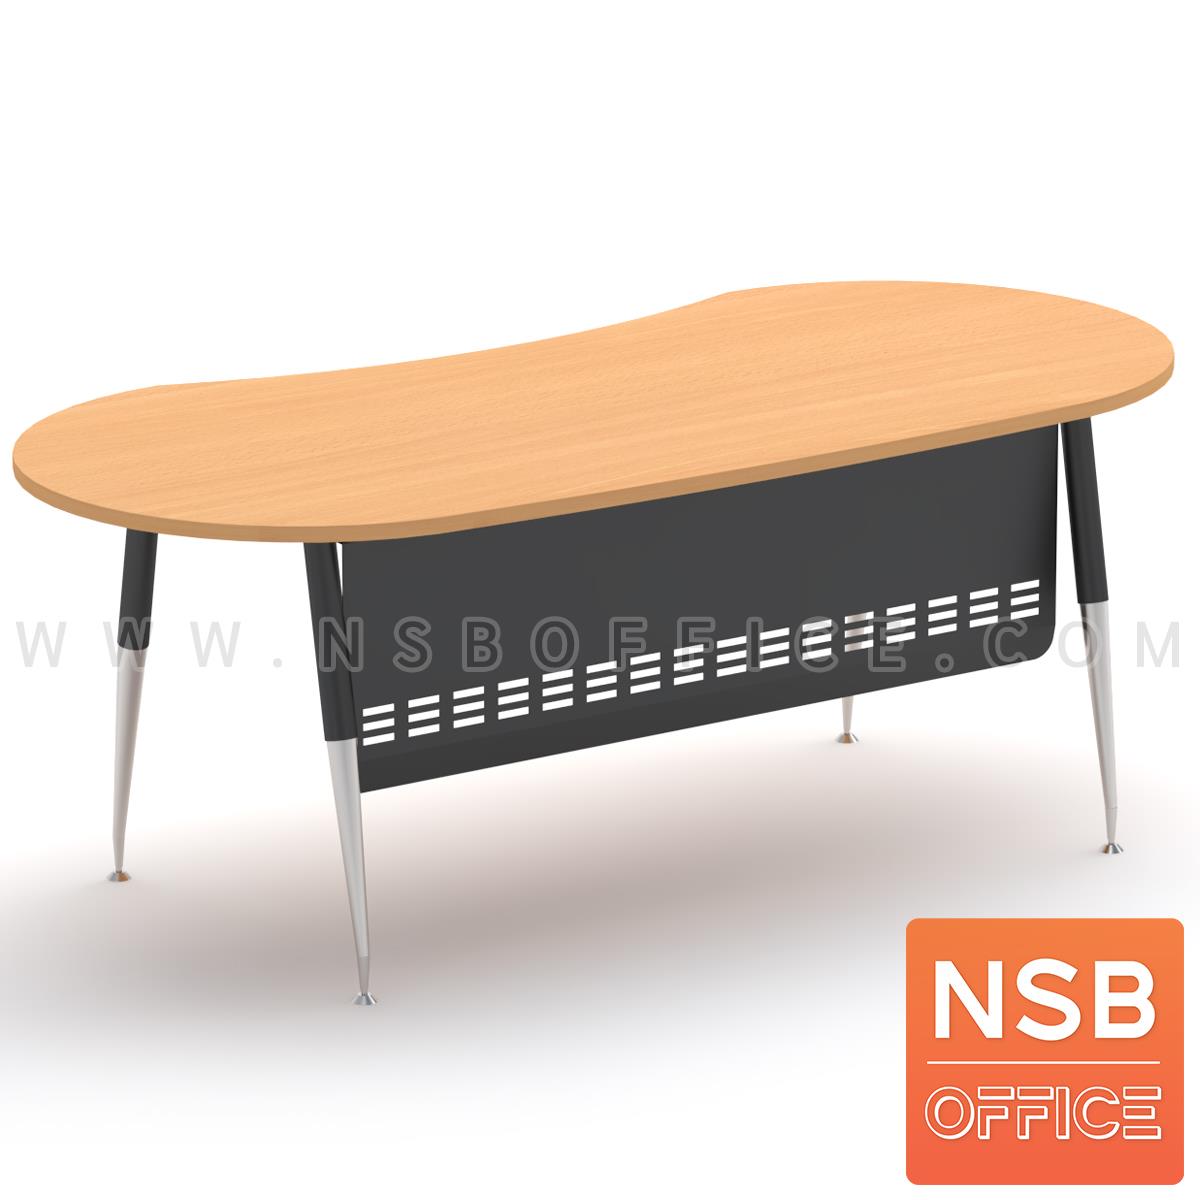 A30A046:โต๊ะผู้บริหารทรงรูปถั่ว รุ่น Barebone (แบร์โบน) ขนาด 200 cm.  ขาเหล็กวีคว่ำทำสี ปลายเรียว